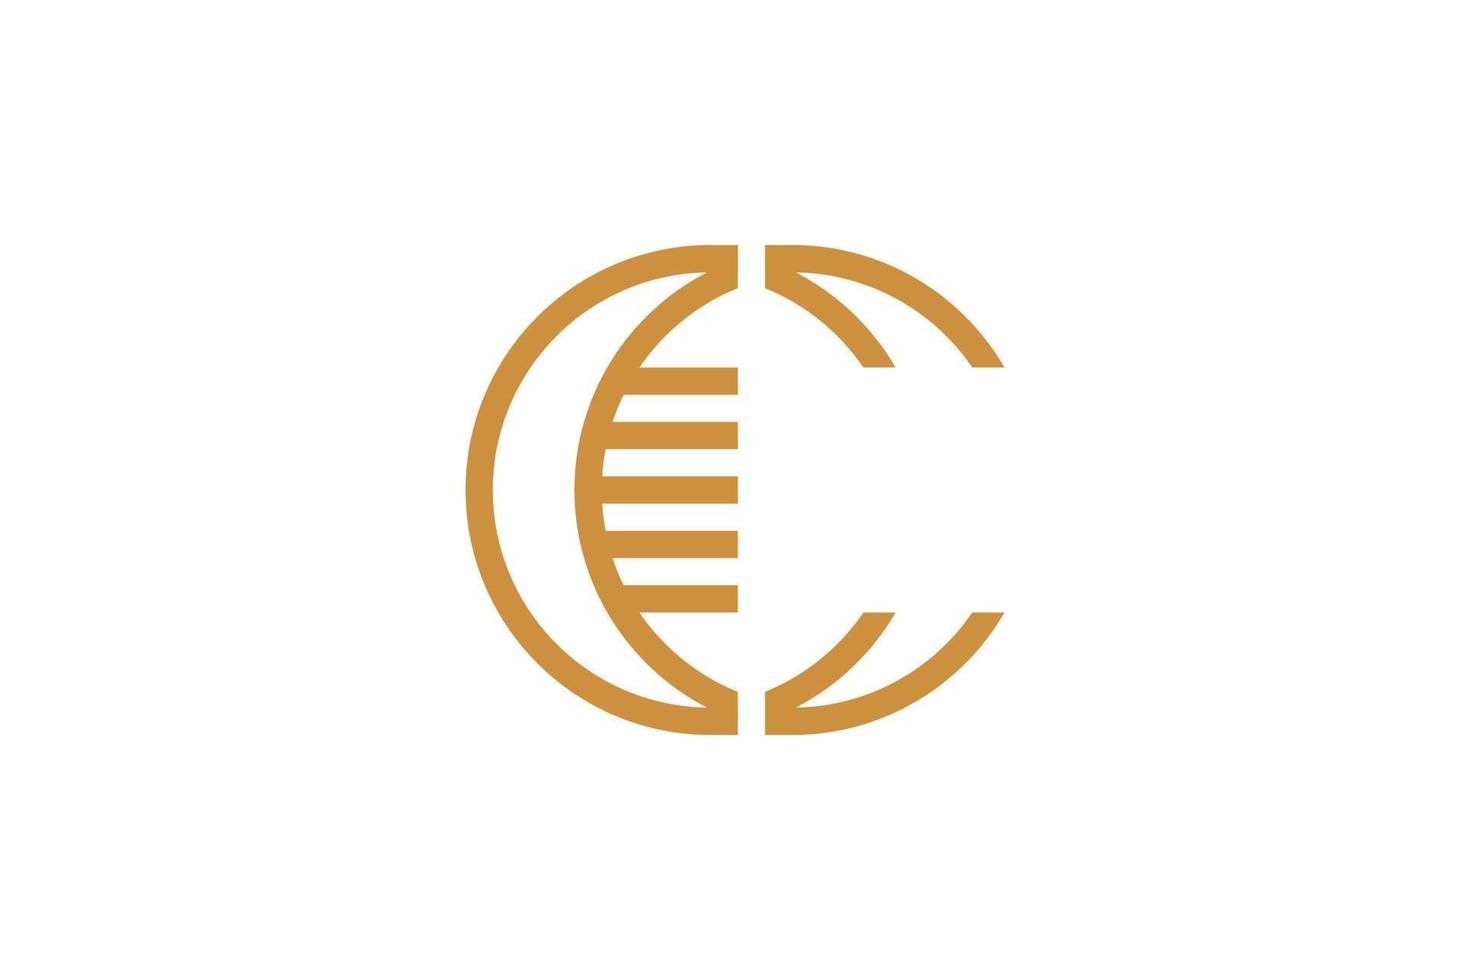 el logotipo de la letra c monoline vector